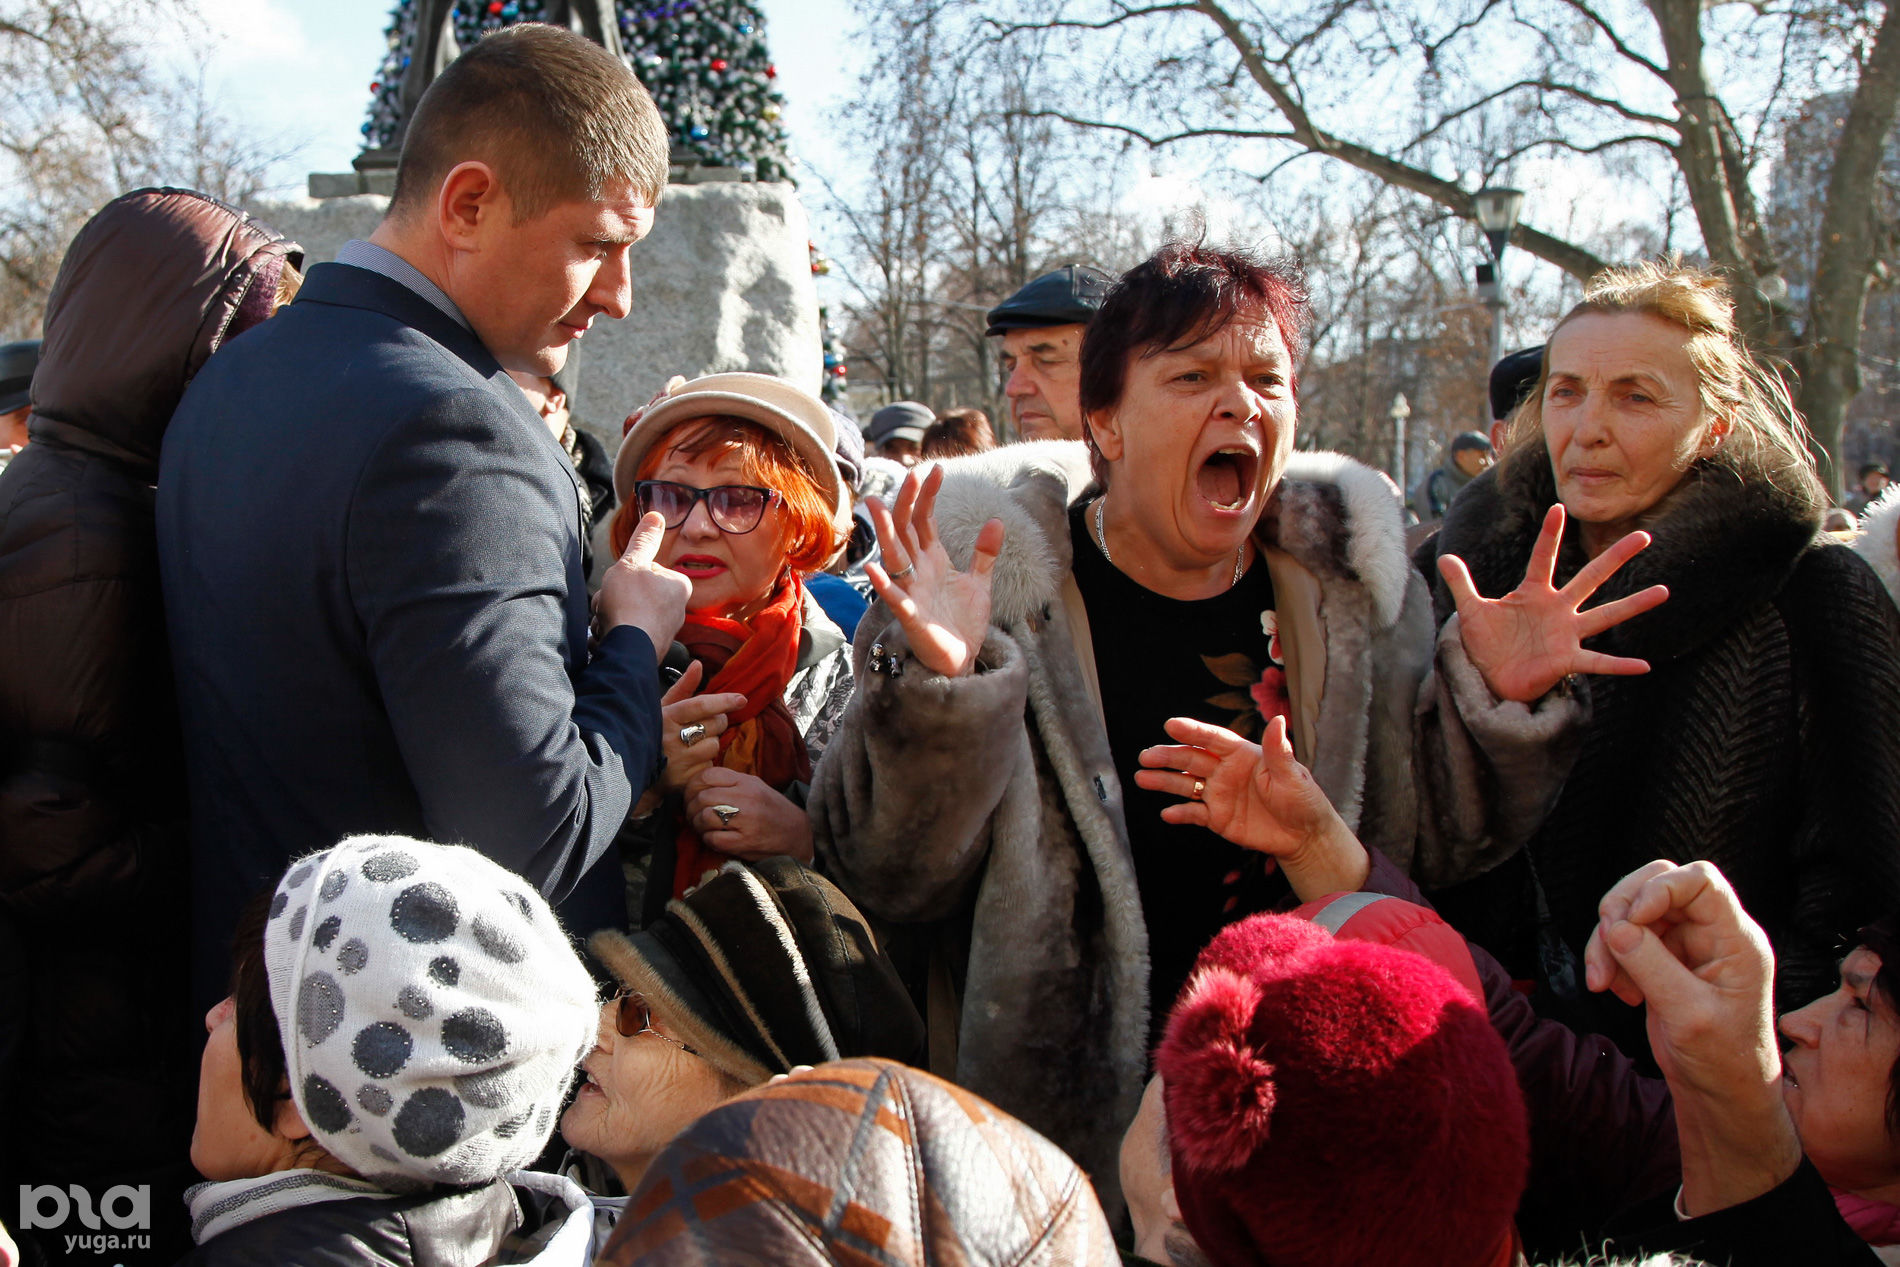 В Краснодаре пенсионеры вышли на митинг против отмены льгот на проезд © Влад Александров, ЮГА.ру